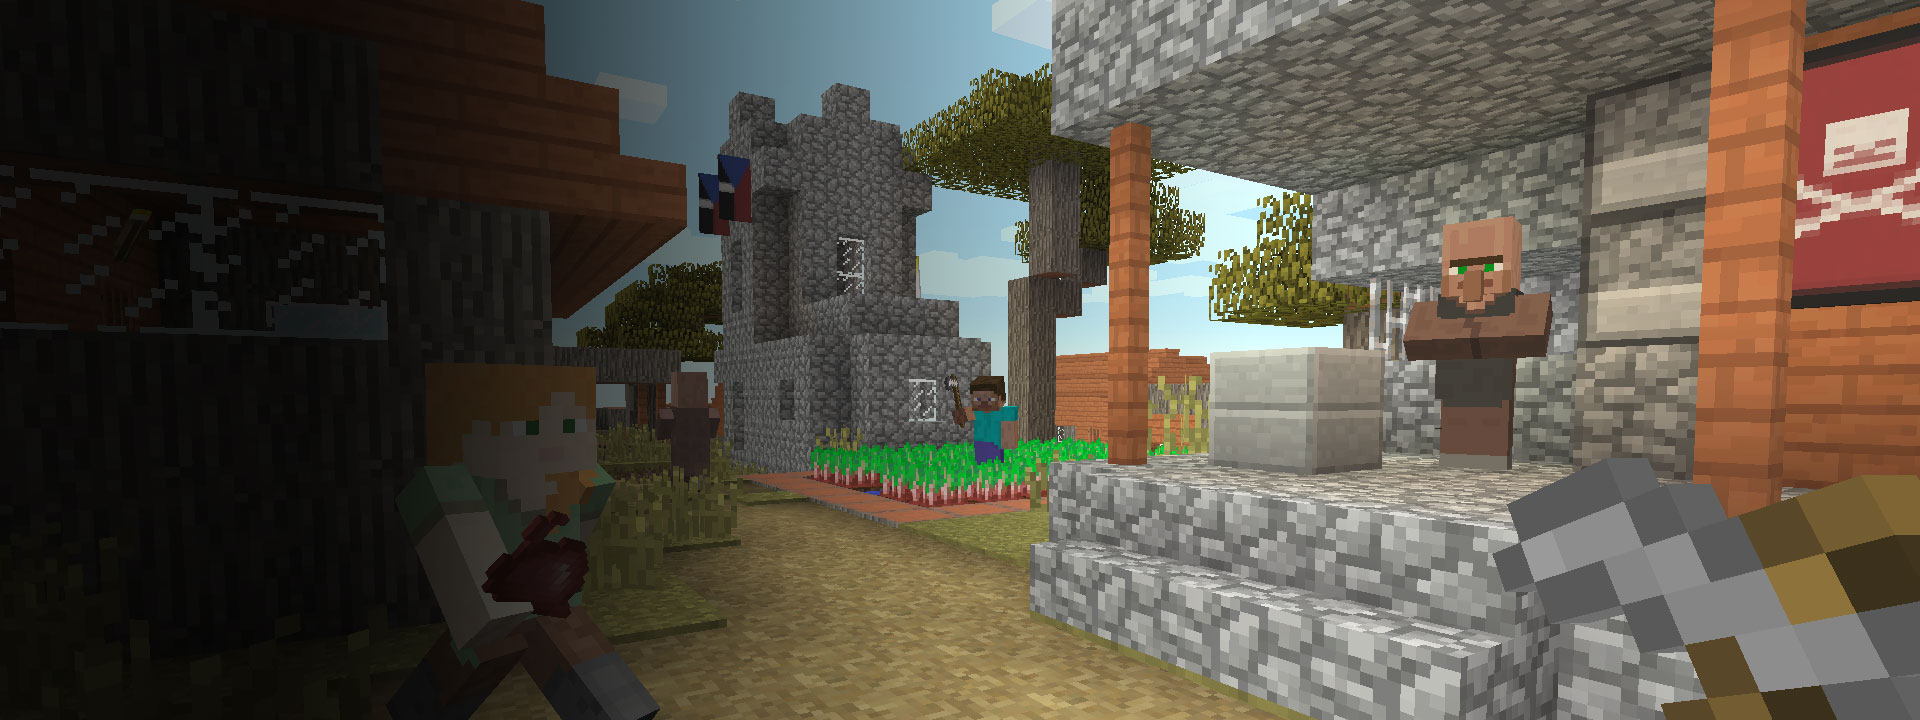 Mehrere Häuser, Minecraft-Charaktere laufen im Vordergrund.